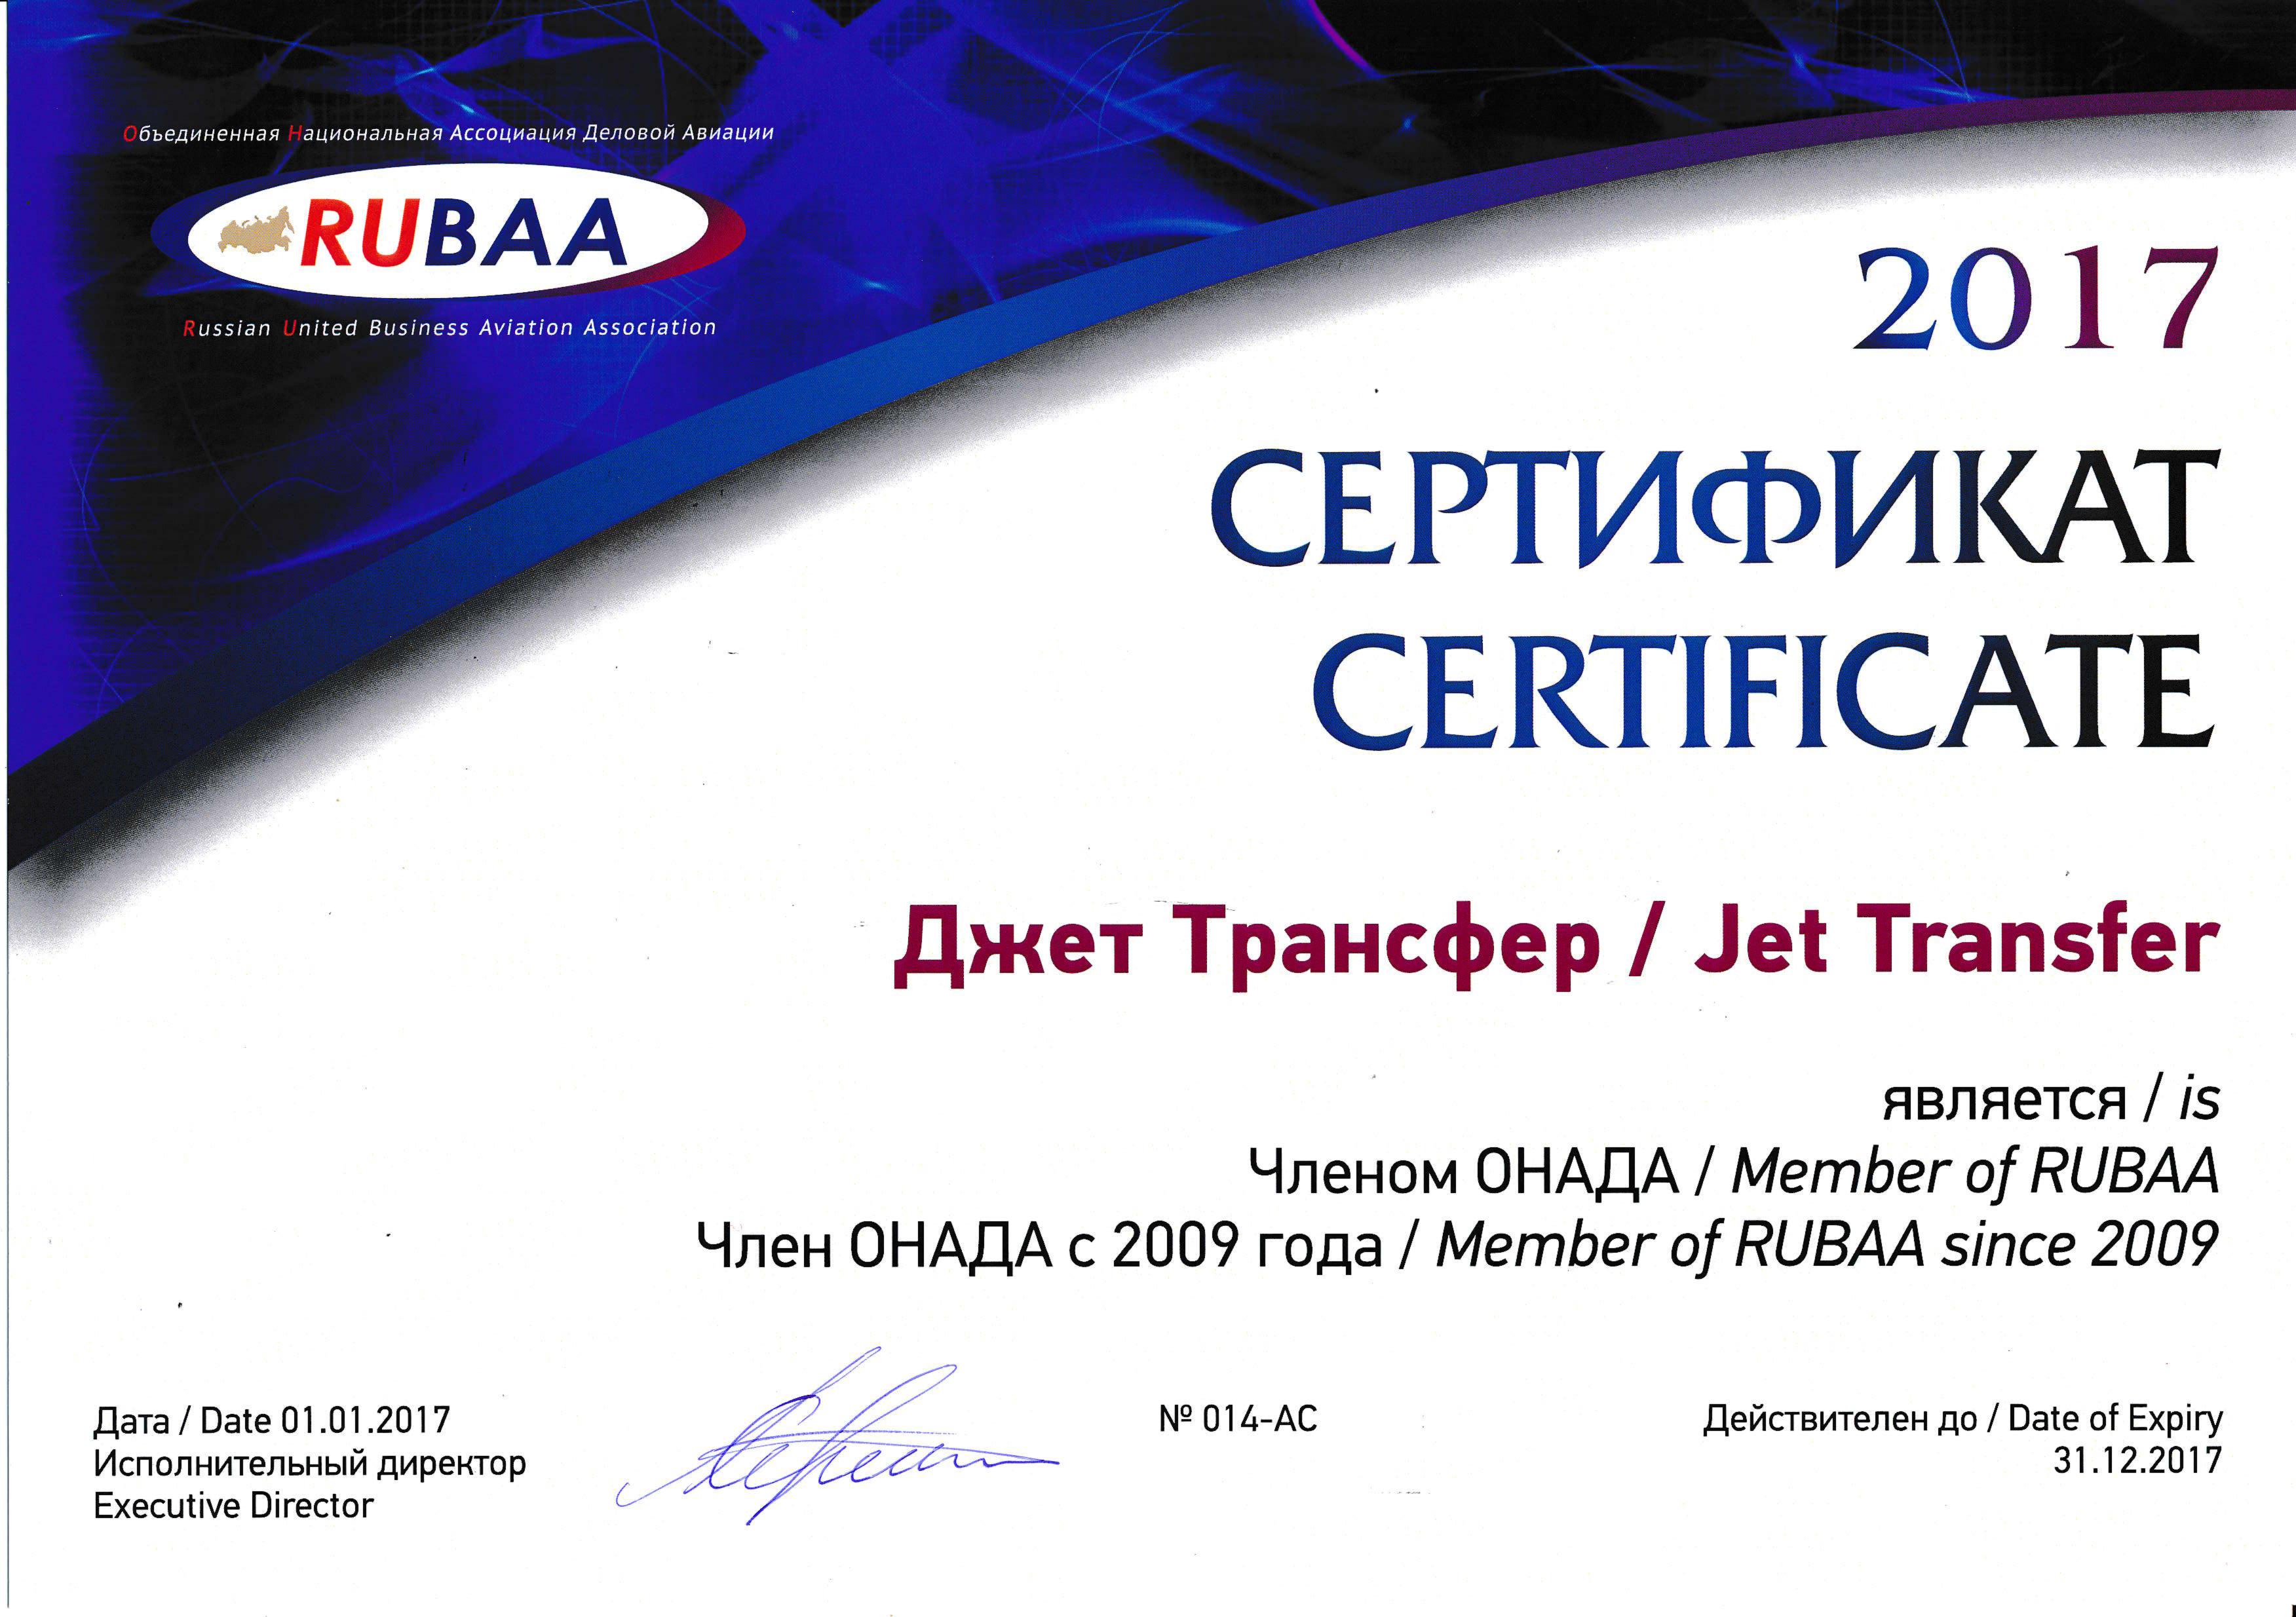 Сертификат члена ОНАДА компании Джет Трансфер